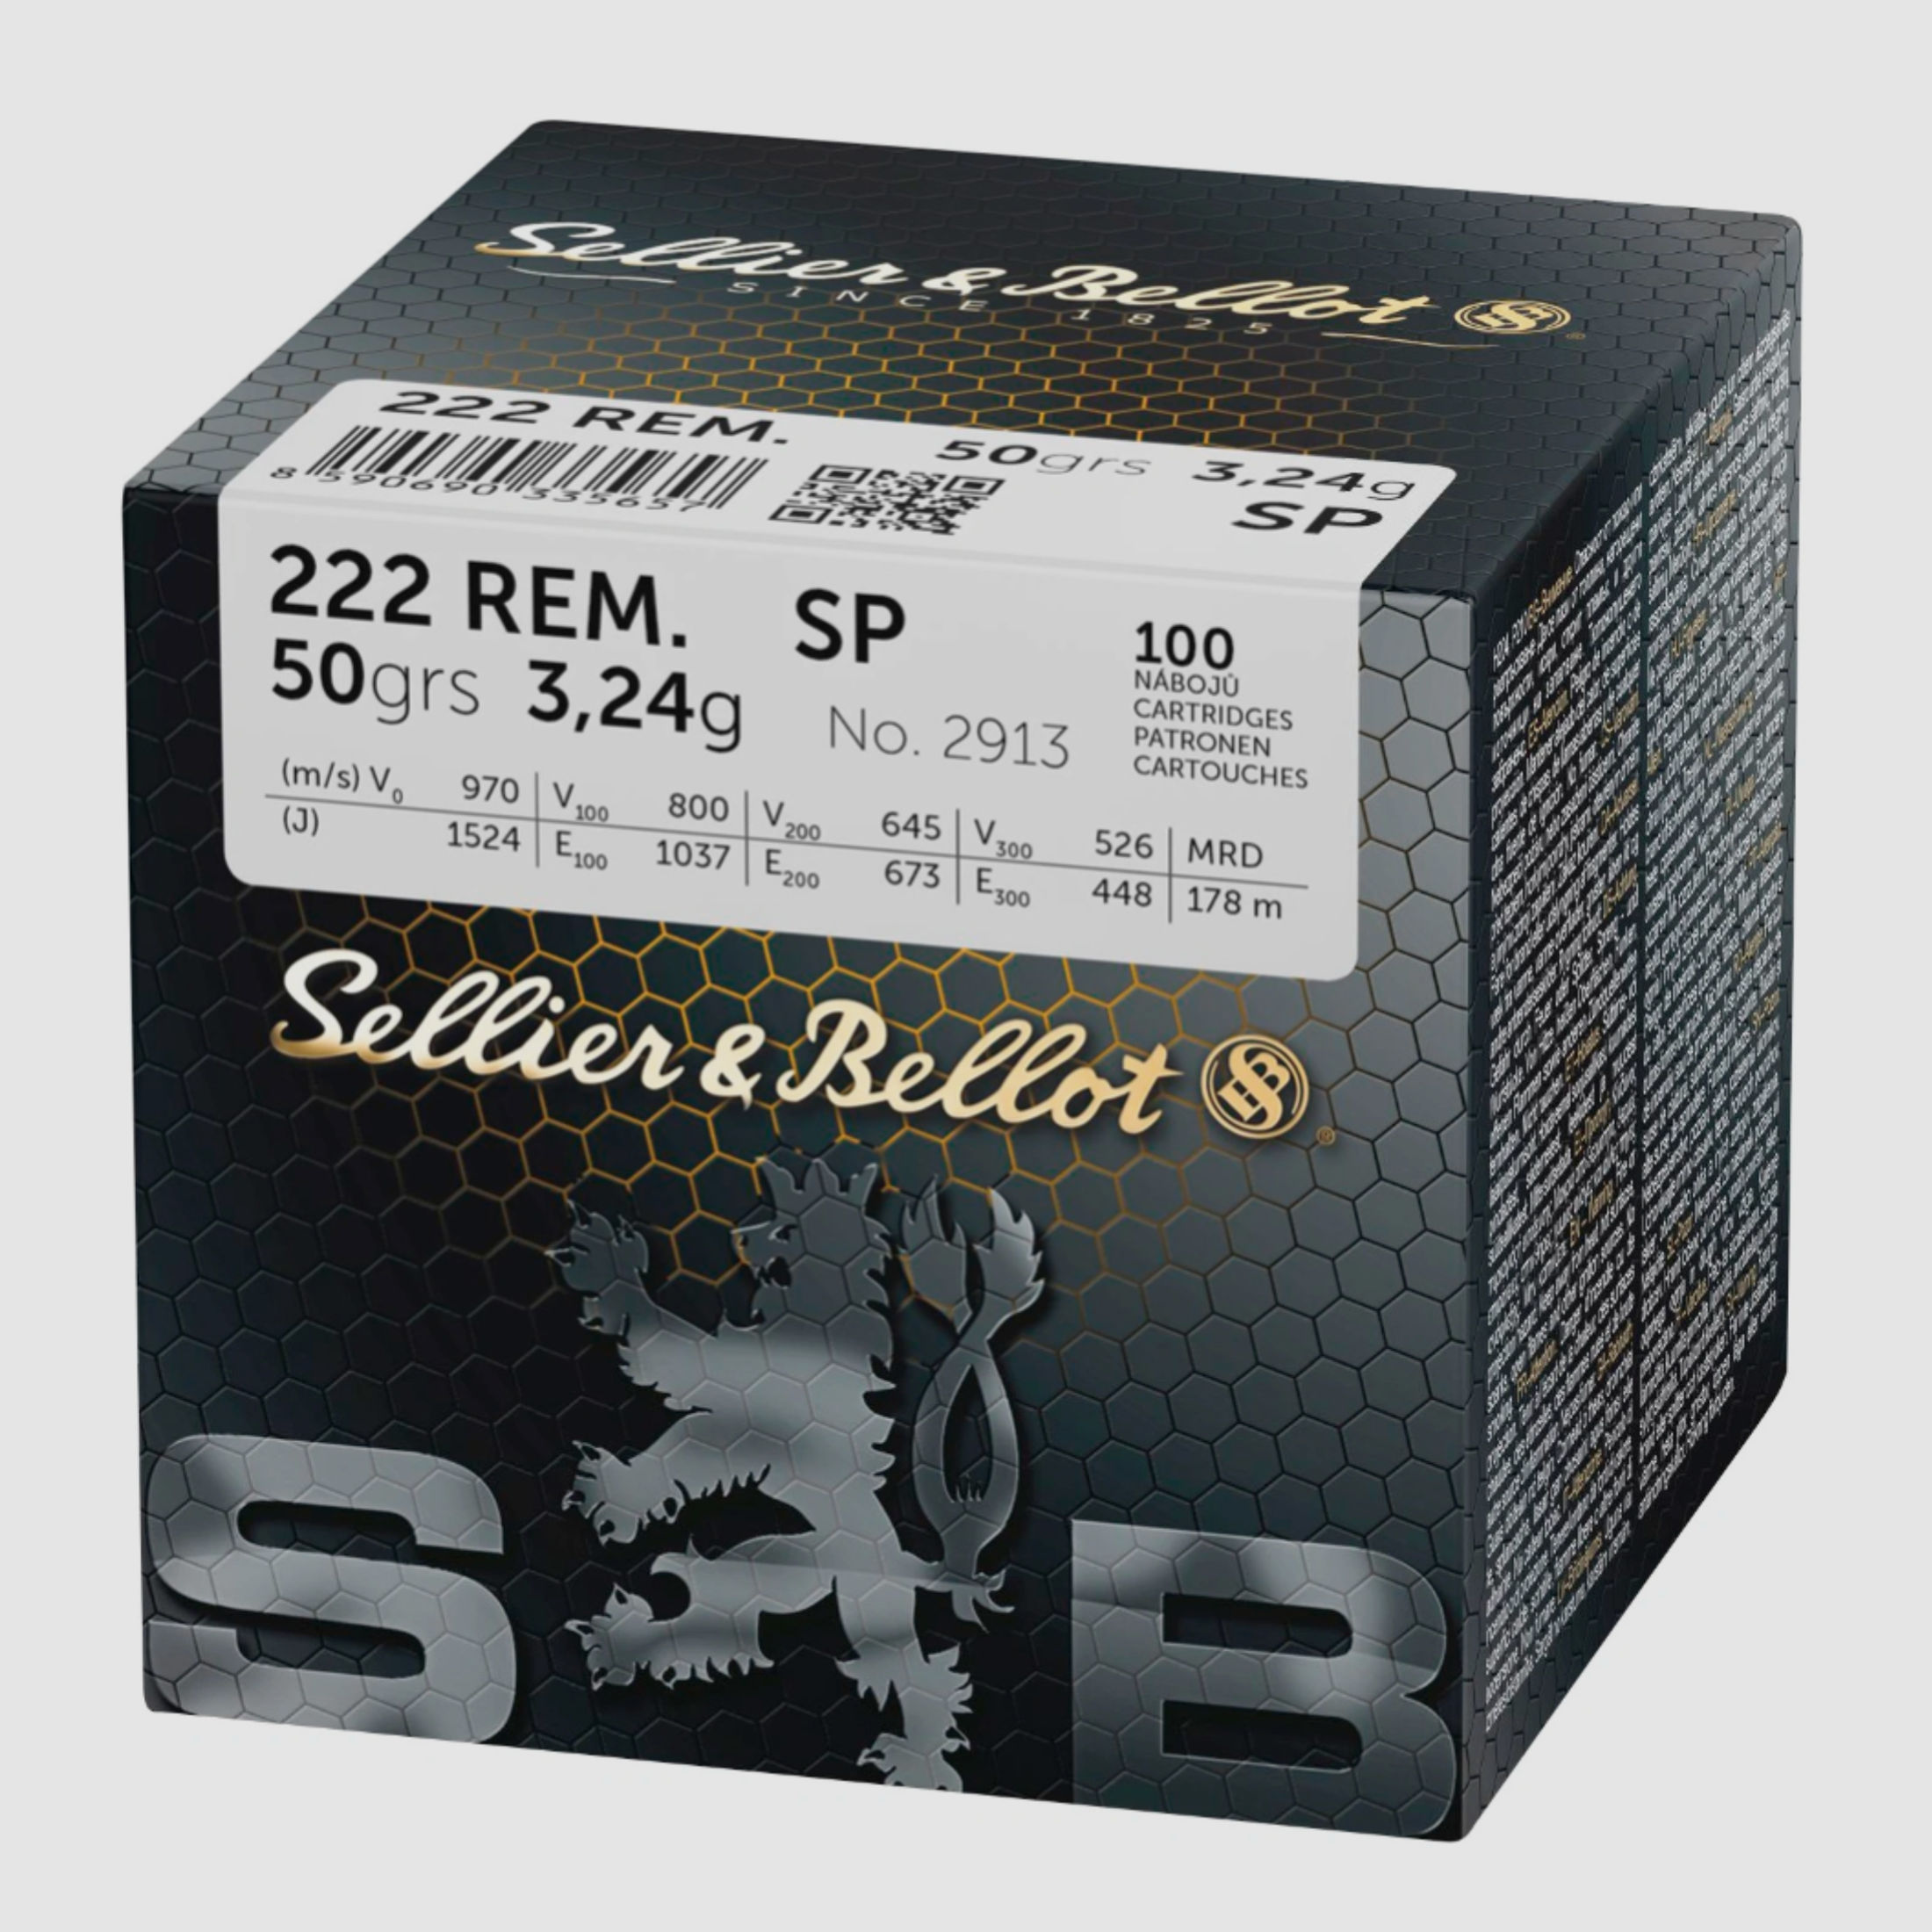 Sellier & Bellot .222 Rem. SP Teilmantel 3,24 g 50 grs. 100 Stück Büchsenmunition